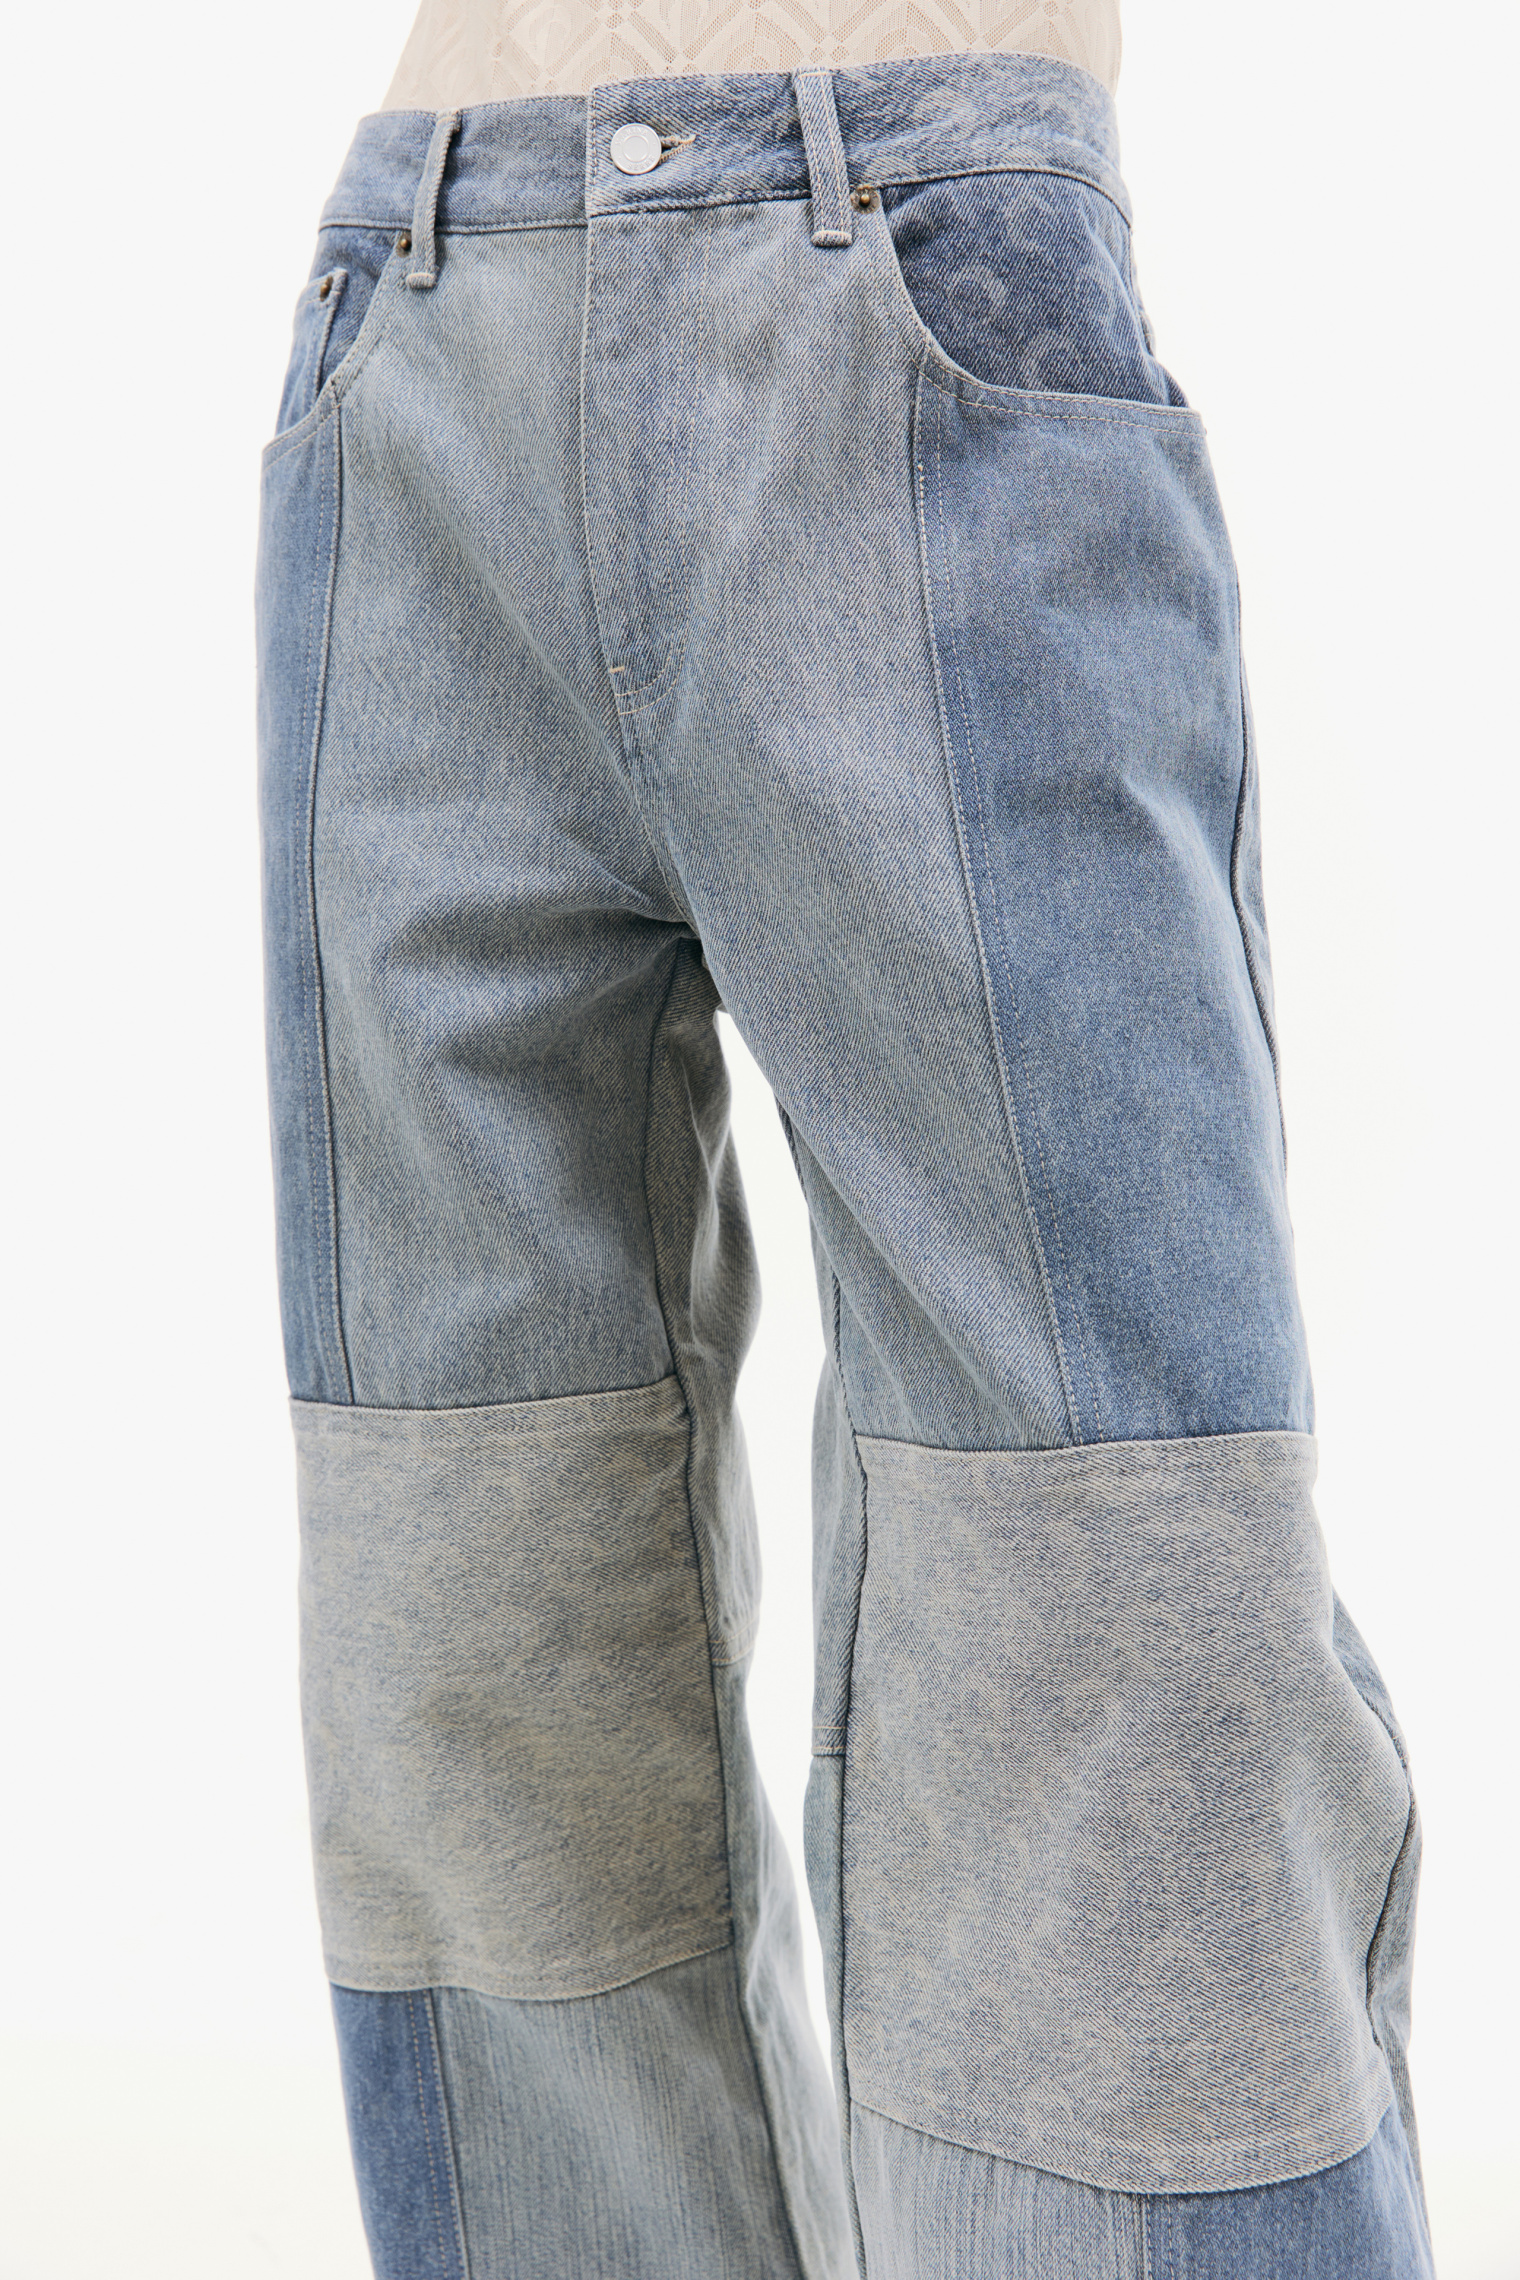 MARINE SERRE Fading wide-leg jeans